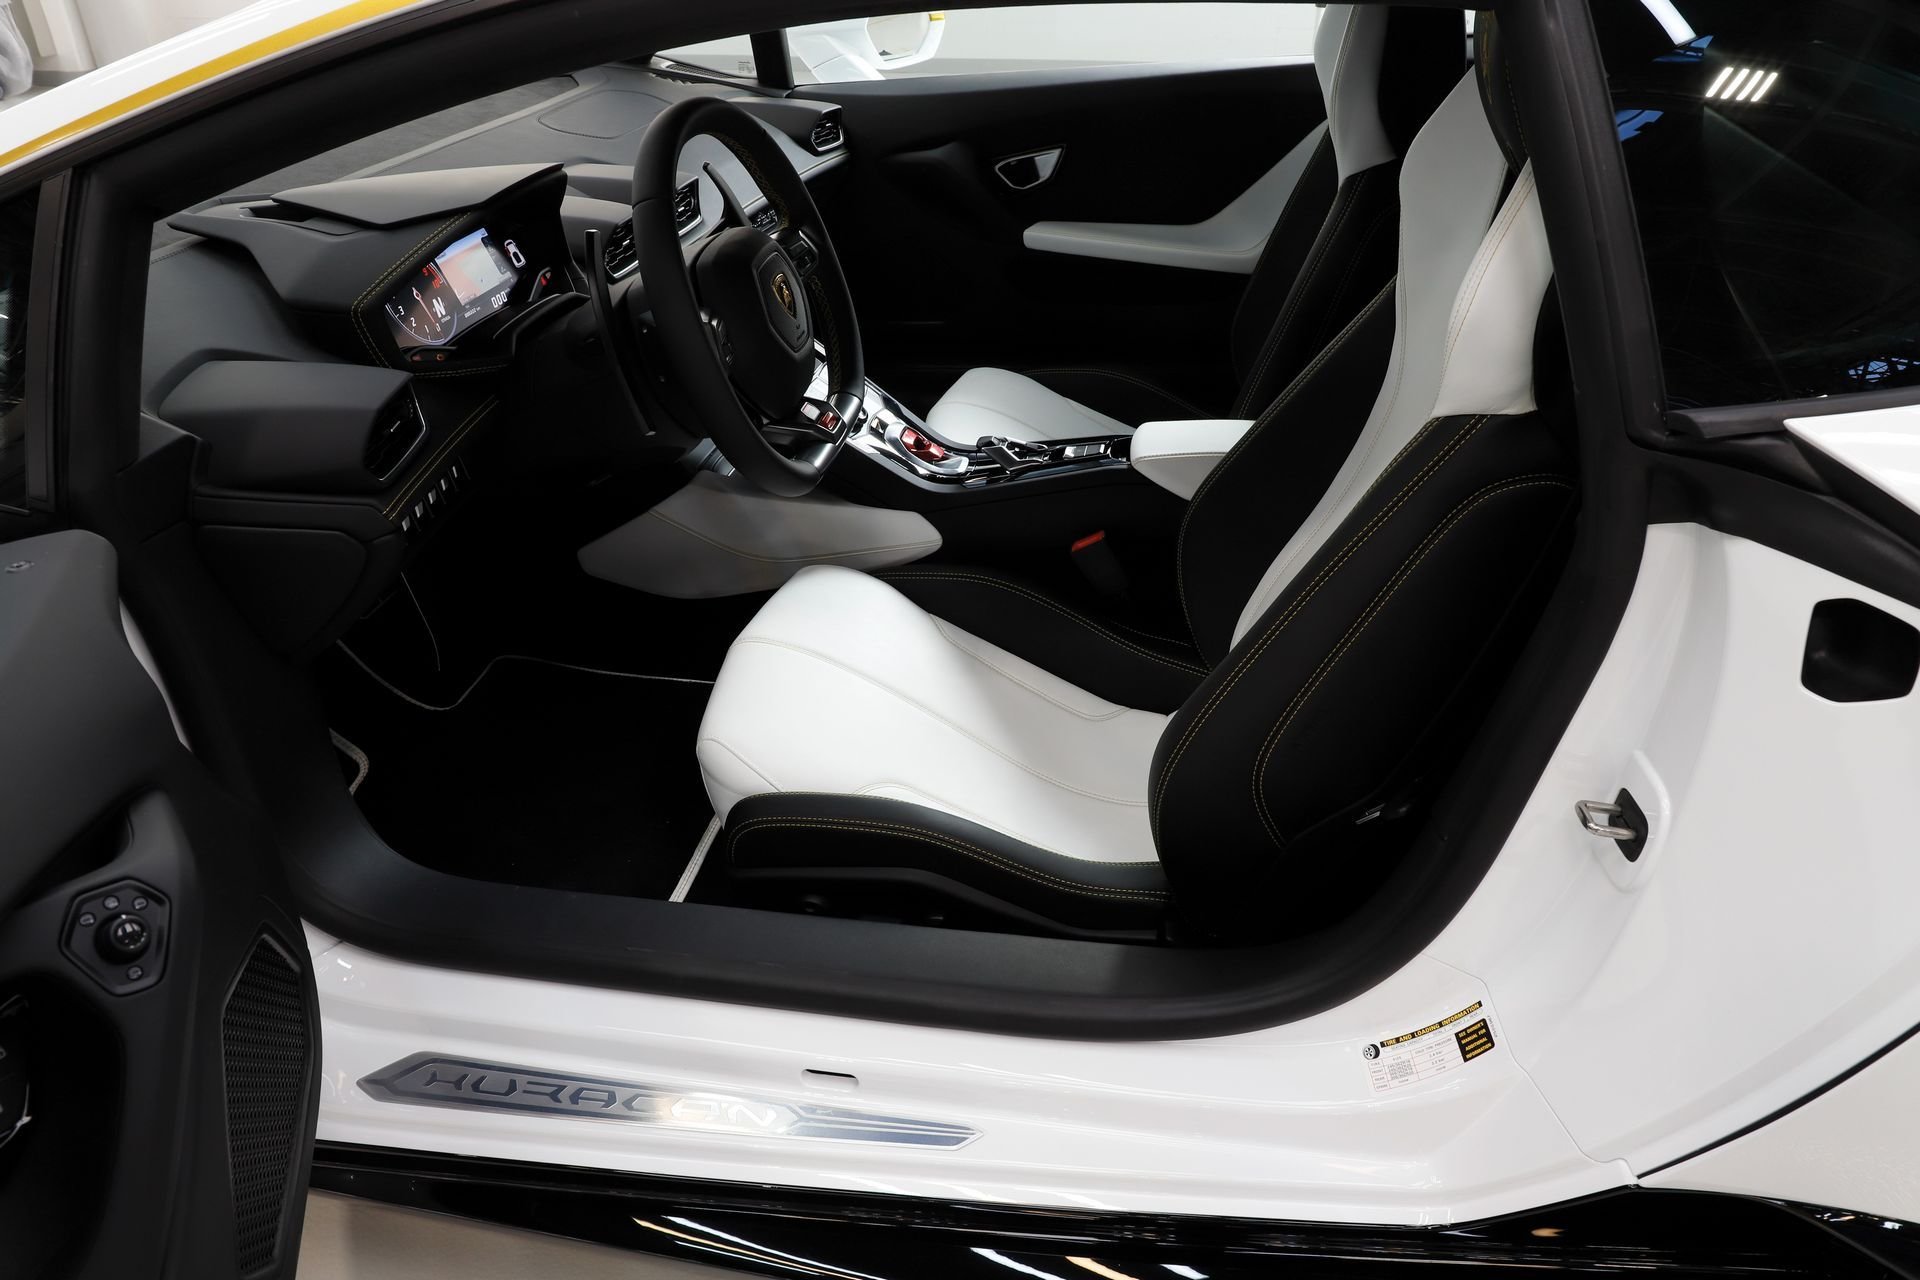 Unikátní Lamborghini Huracán, které dostal papež František darem od automobilky